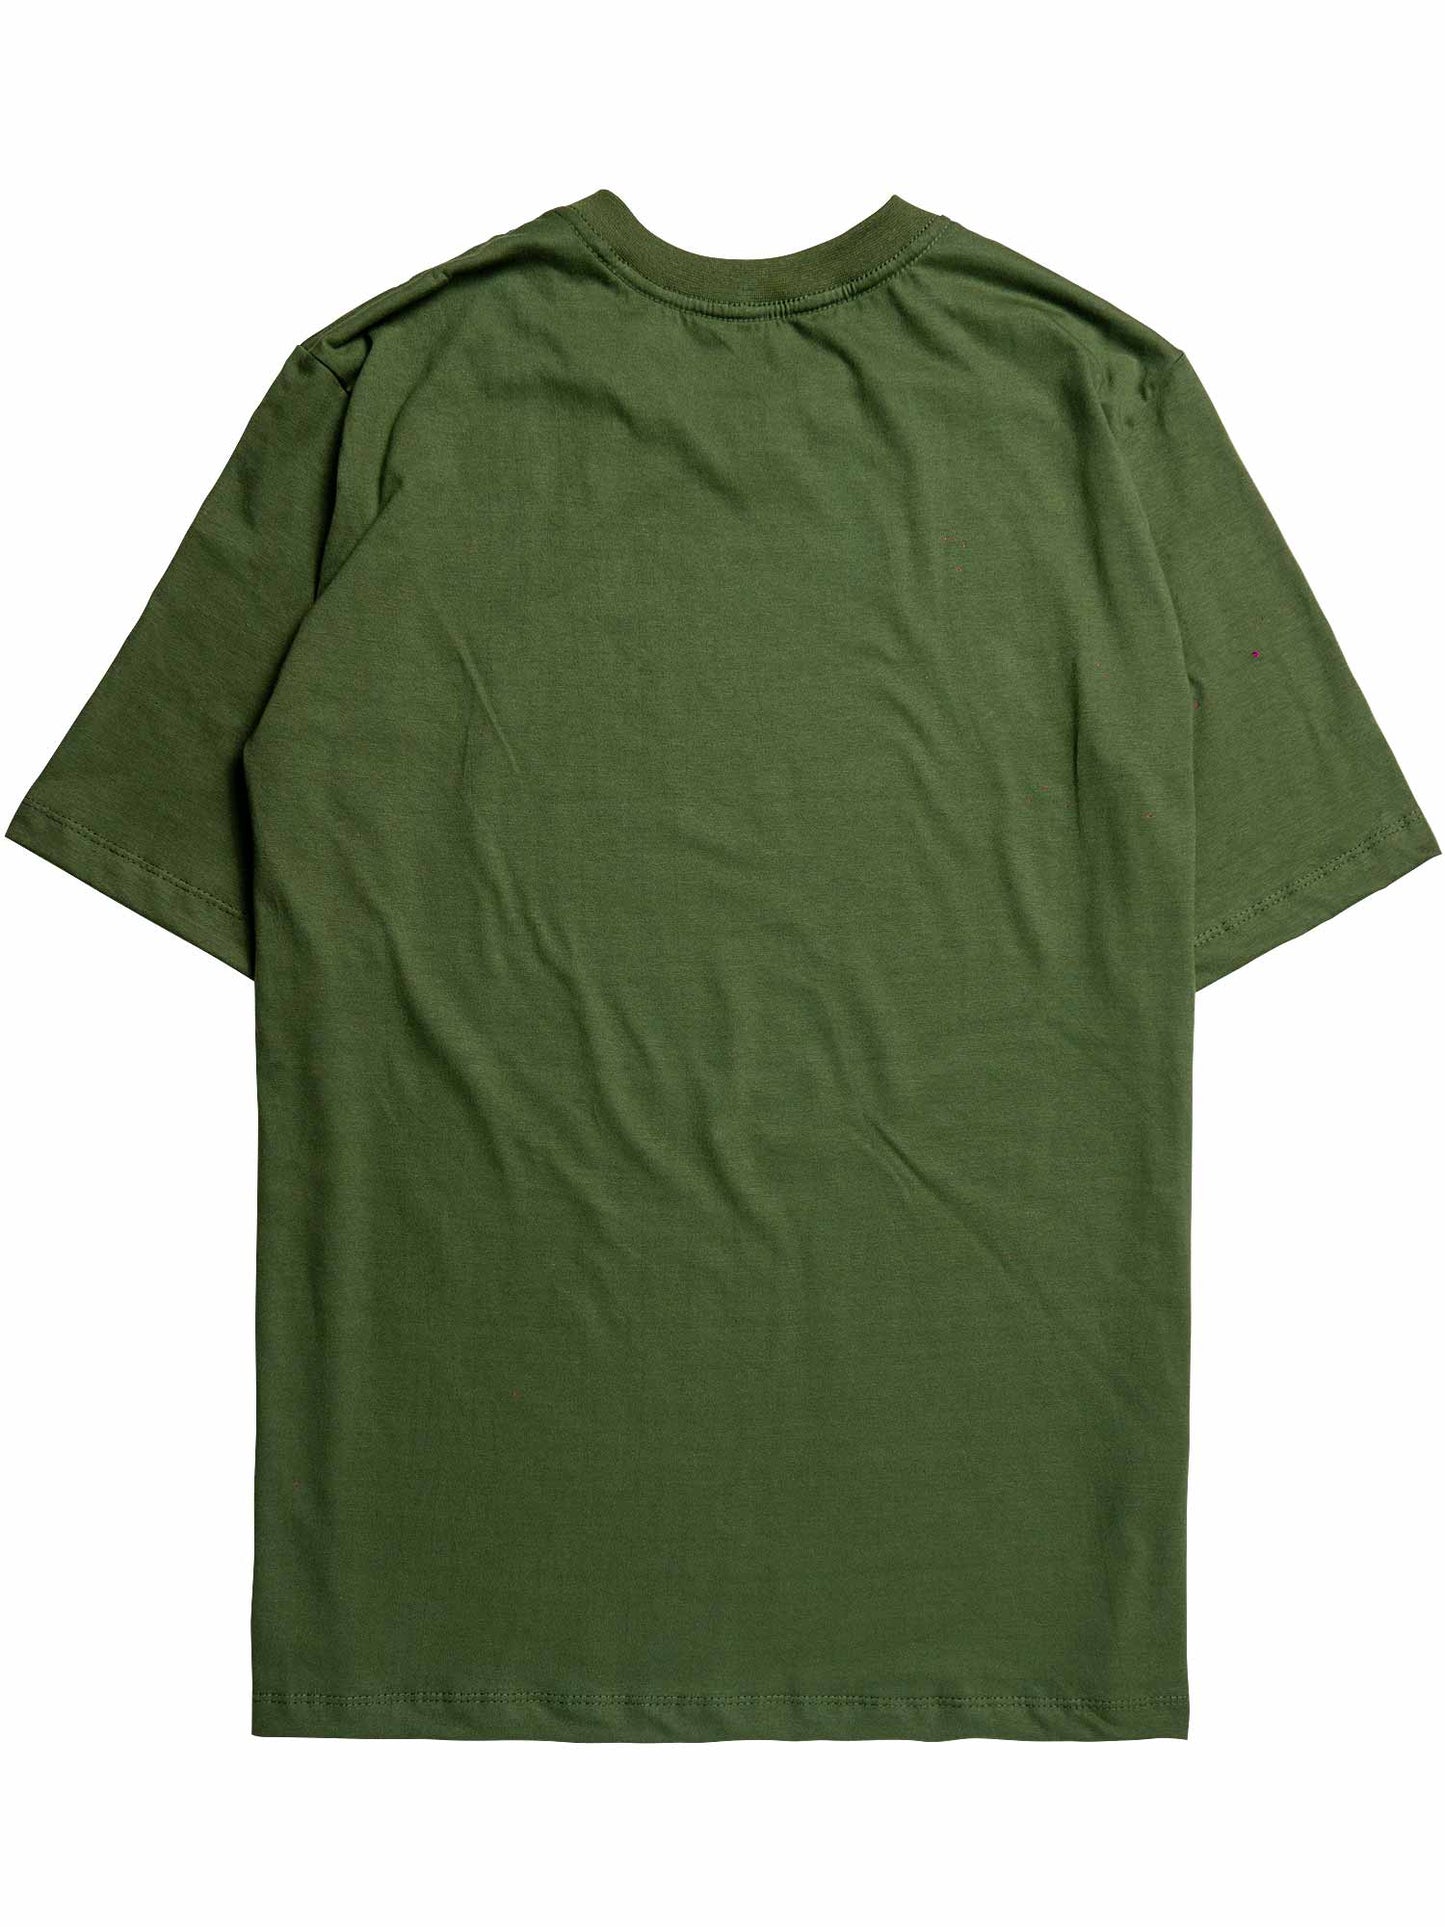 Camiseta-Future-Light-Cone-Verde-Costas